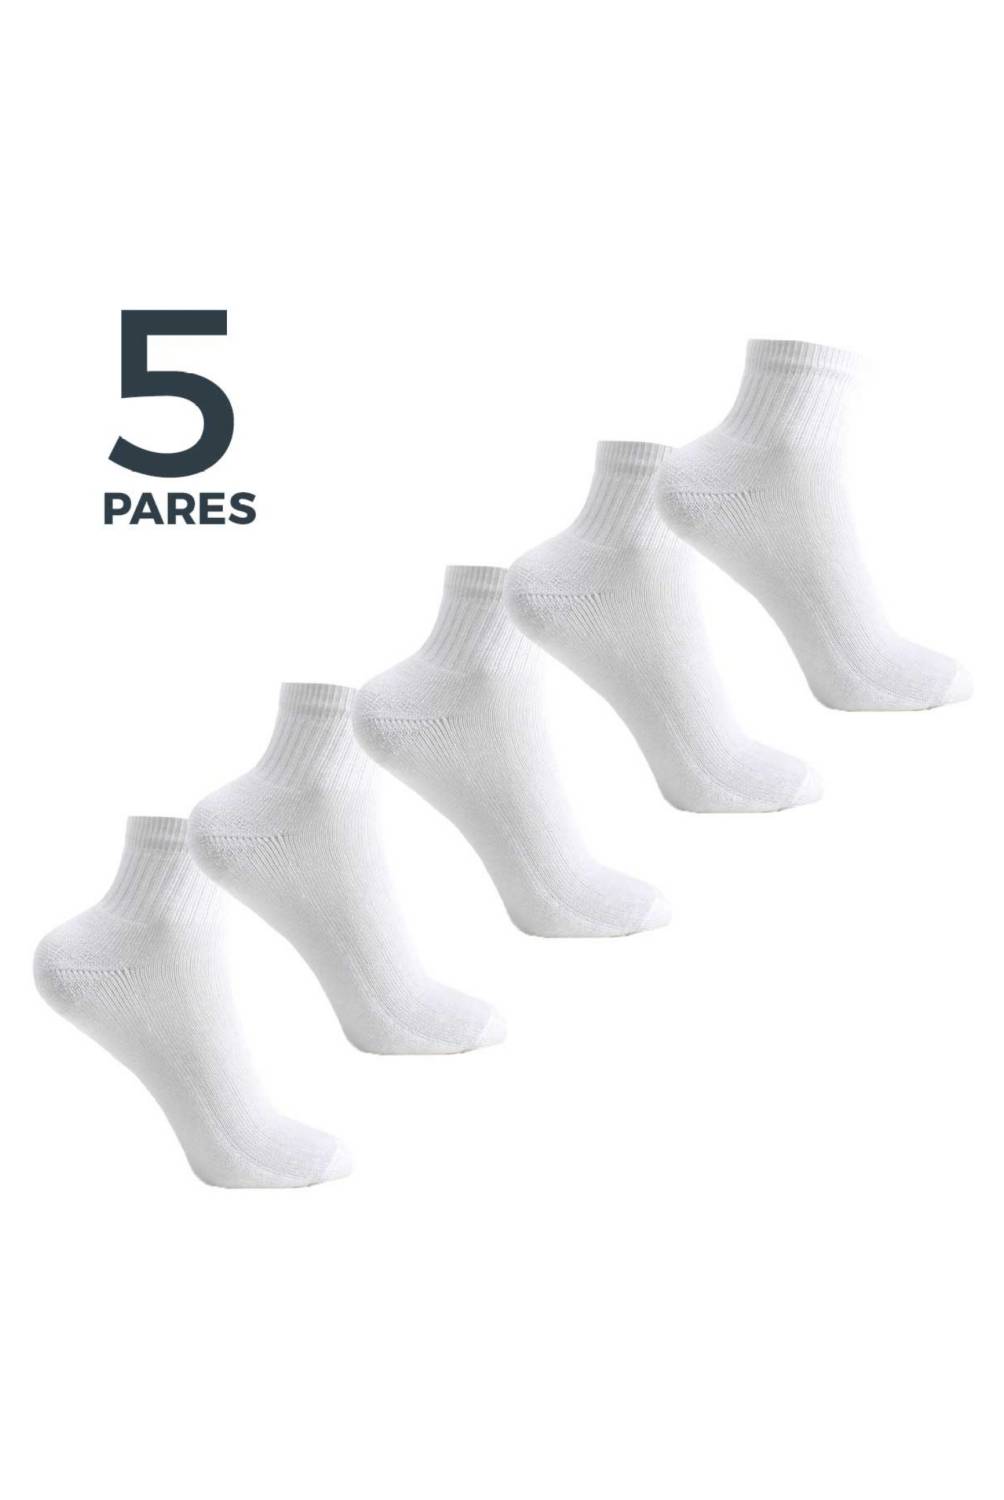 EVERSO Pack 12 pares de calcetas Largas Bucaneras Escolares.